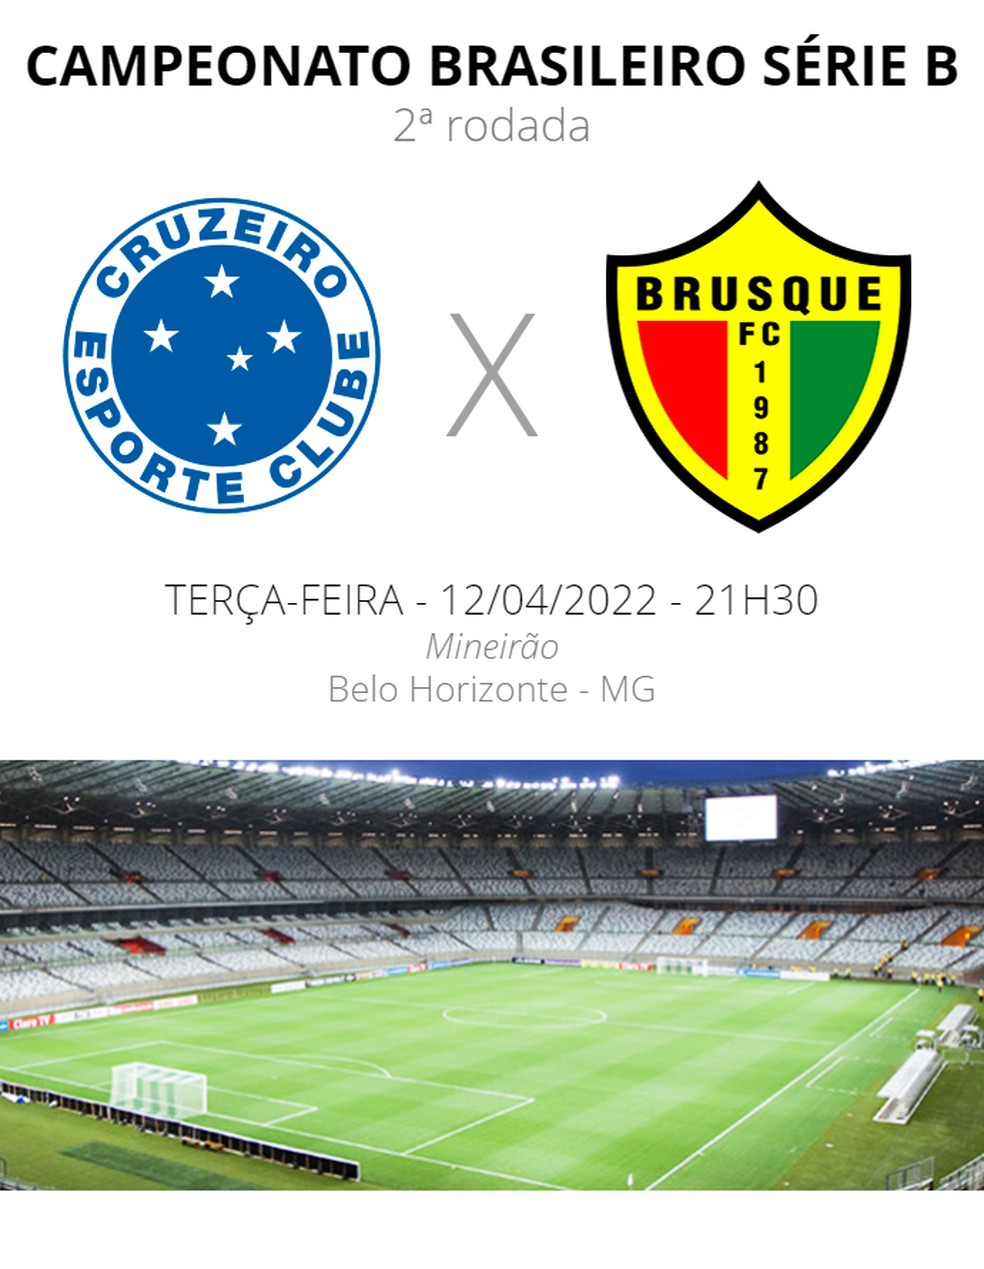 Horário do jogo do Cruzeiro hoje na Série B e transmissão na terça (26/04)